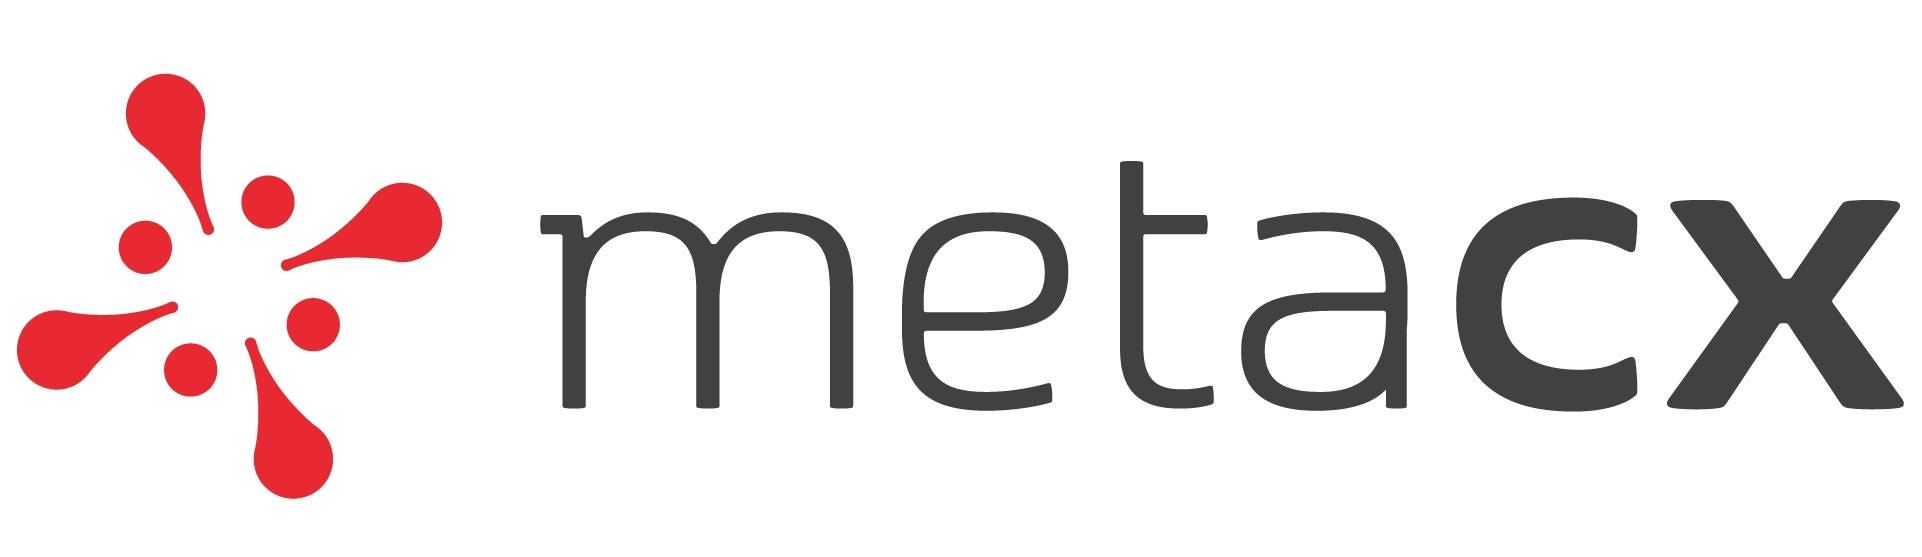 Metacx-logo